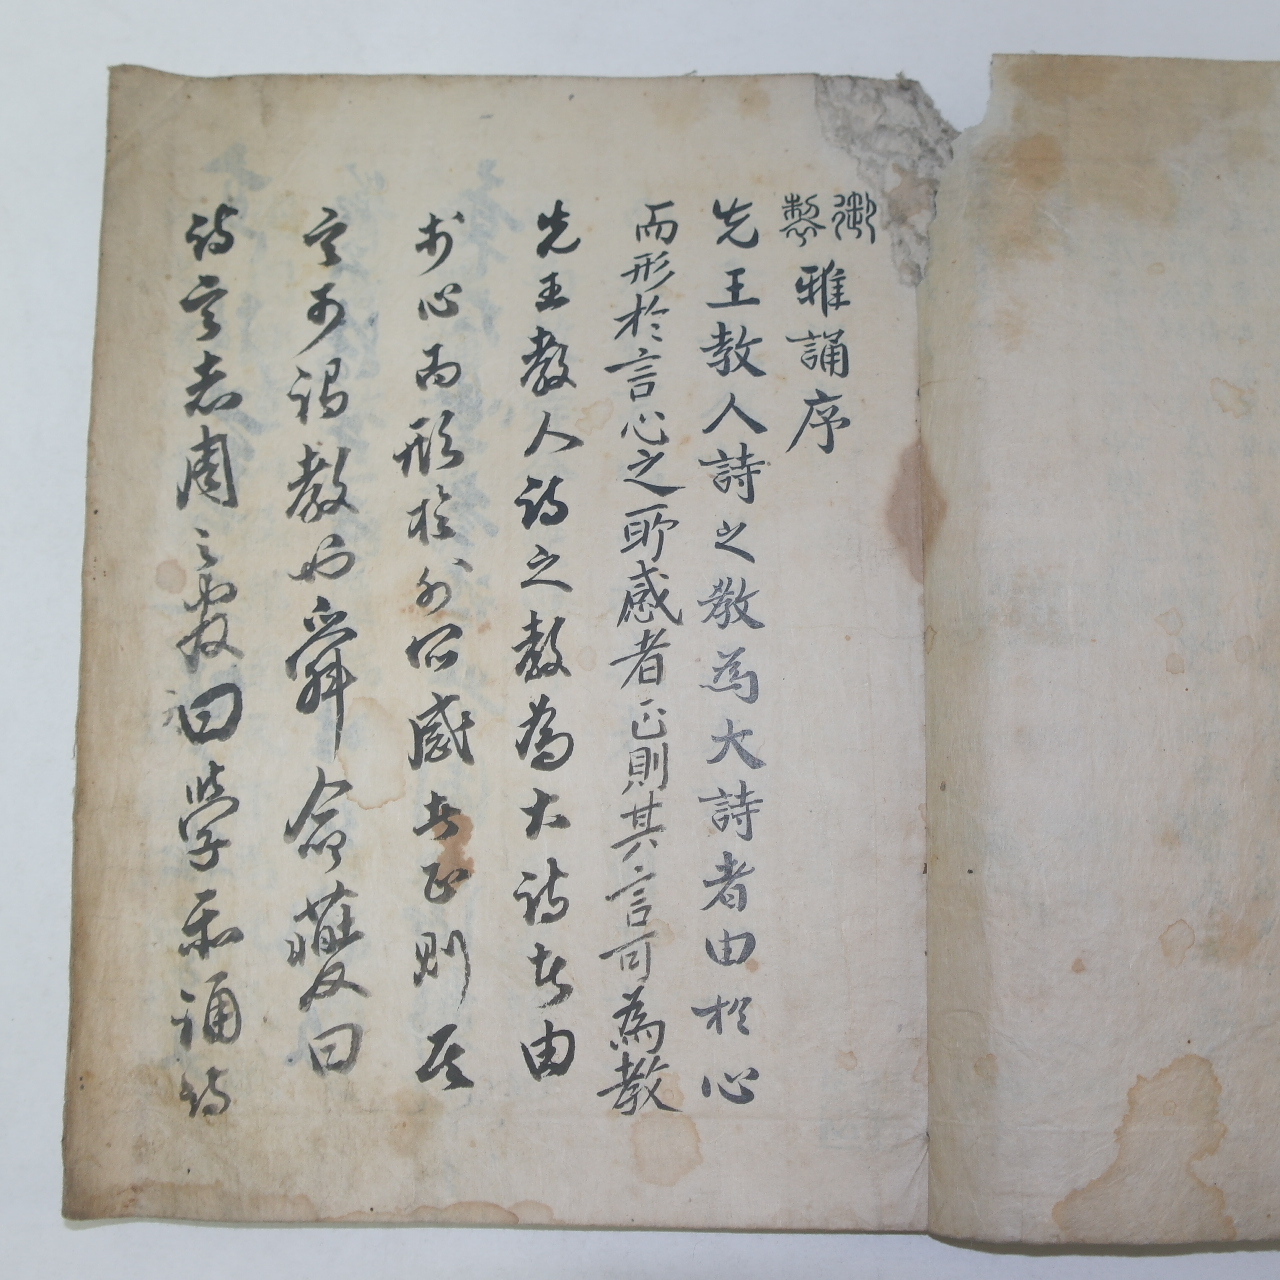 300년이상된 다듬이장지에 고필사본 아송(雅誦)권1~4  1책